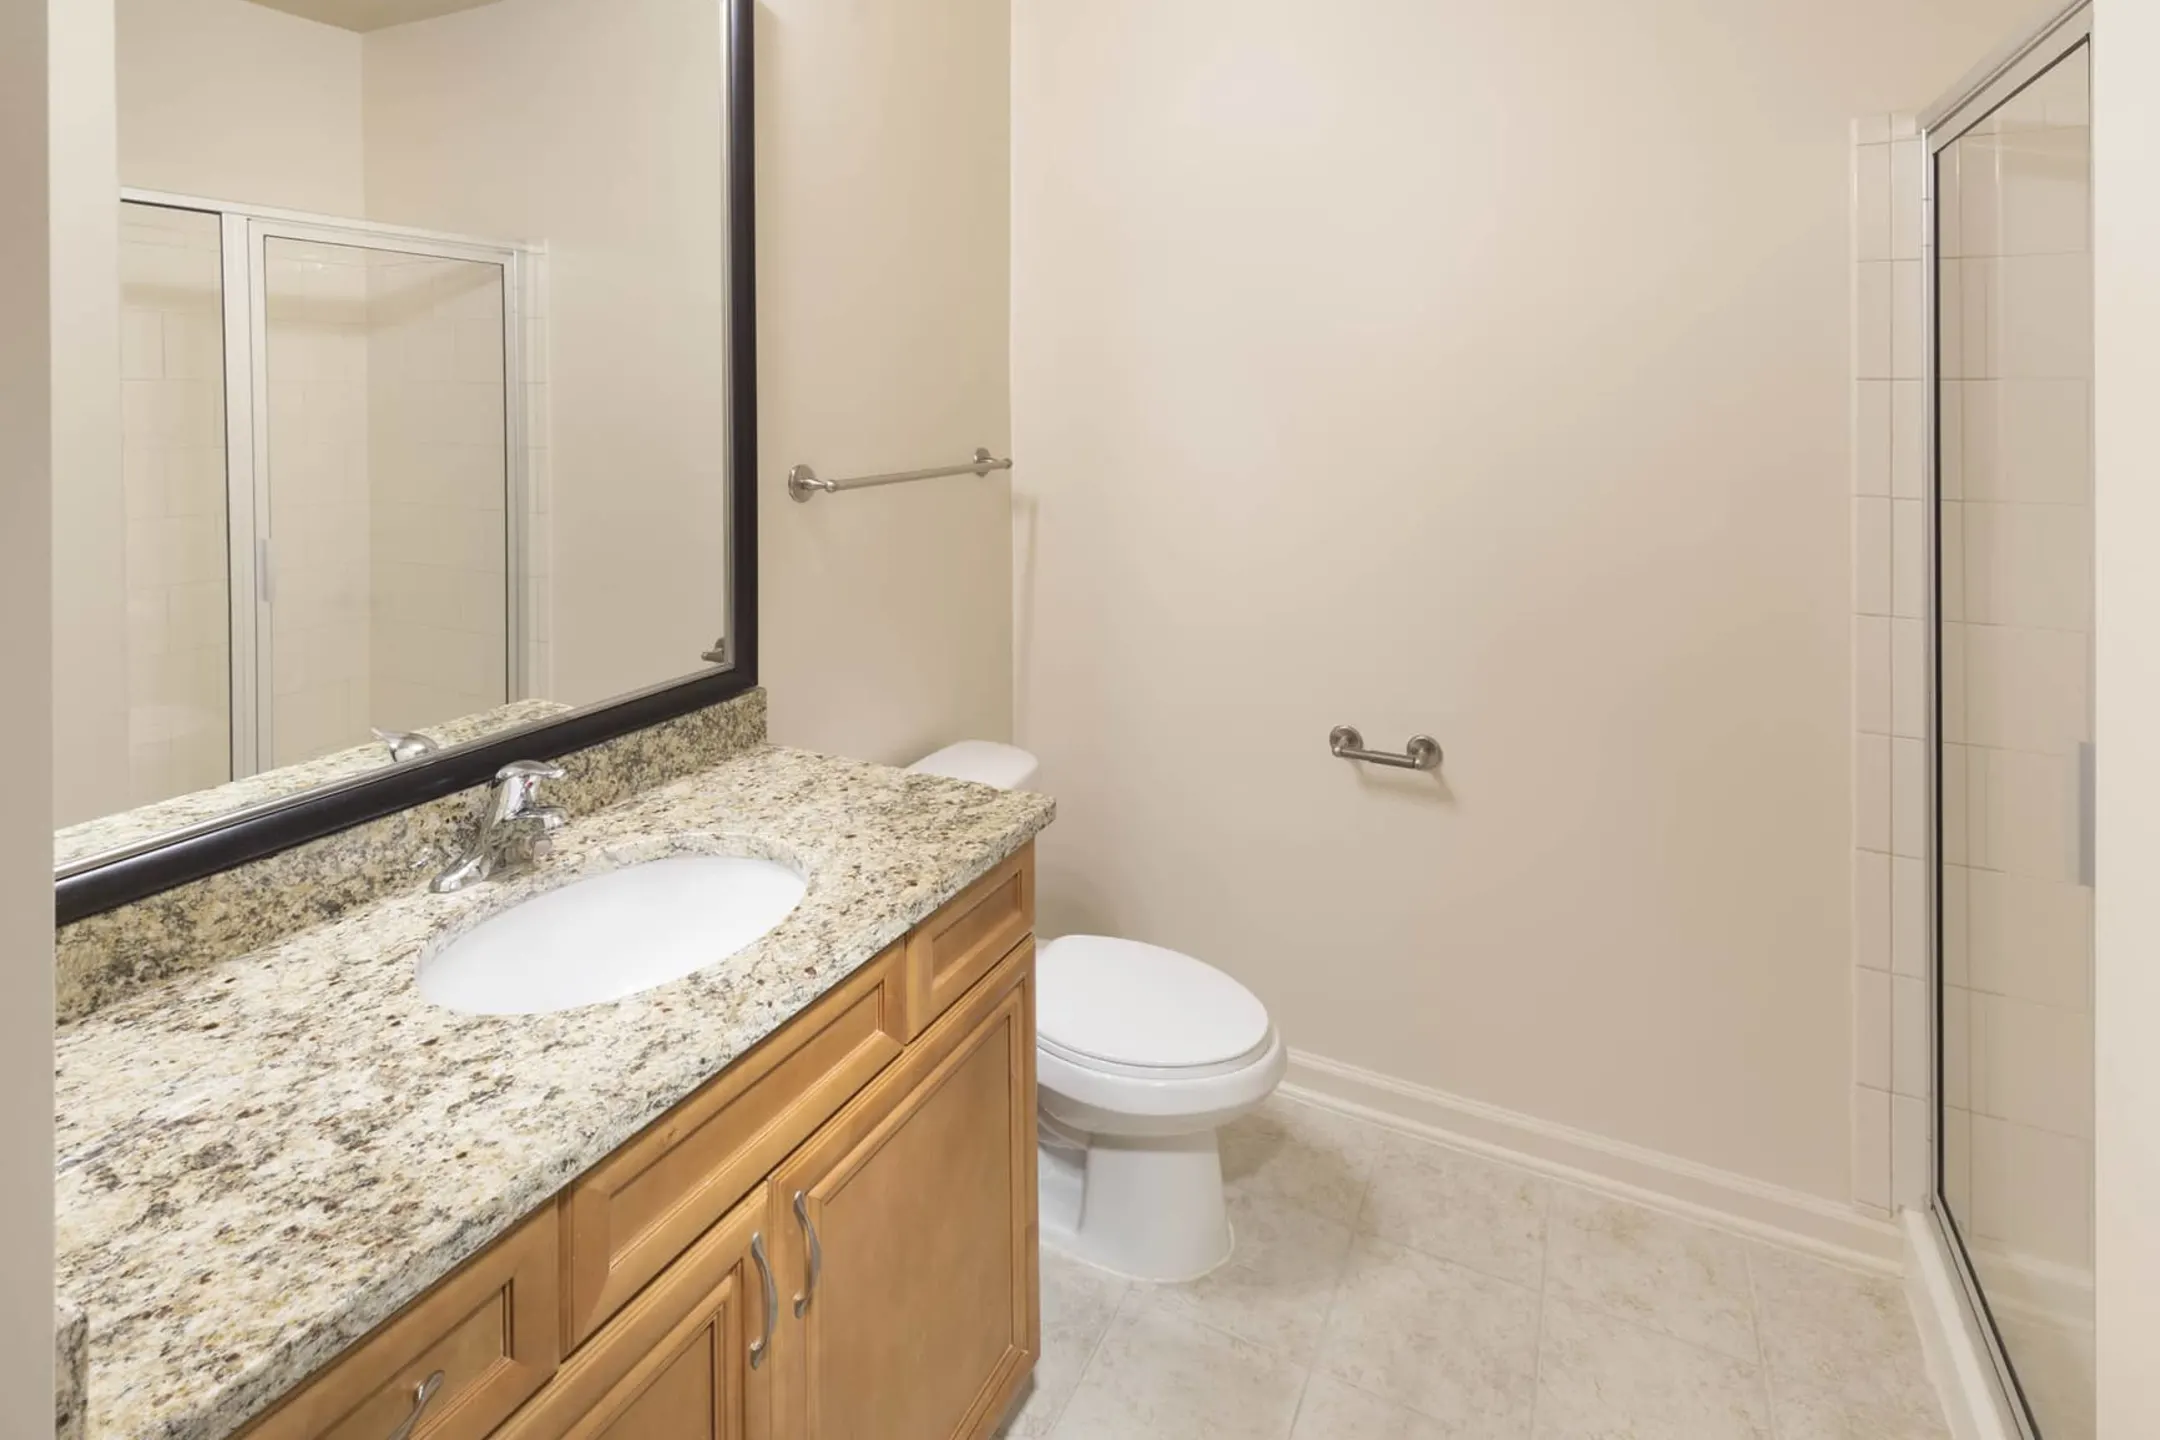 Bathroom - Signal Hill Apartment Homes - Woodbridge, VA